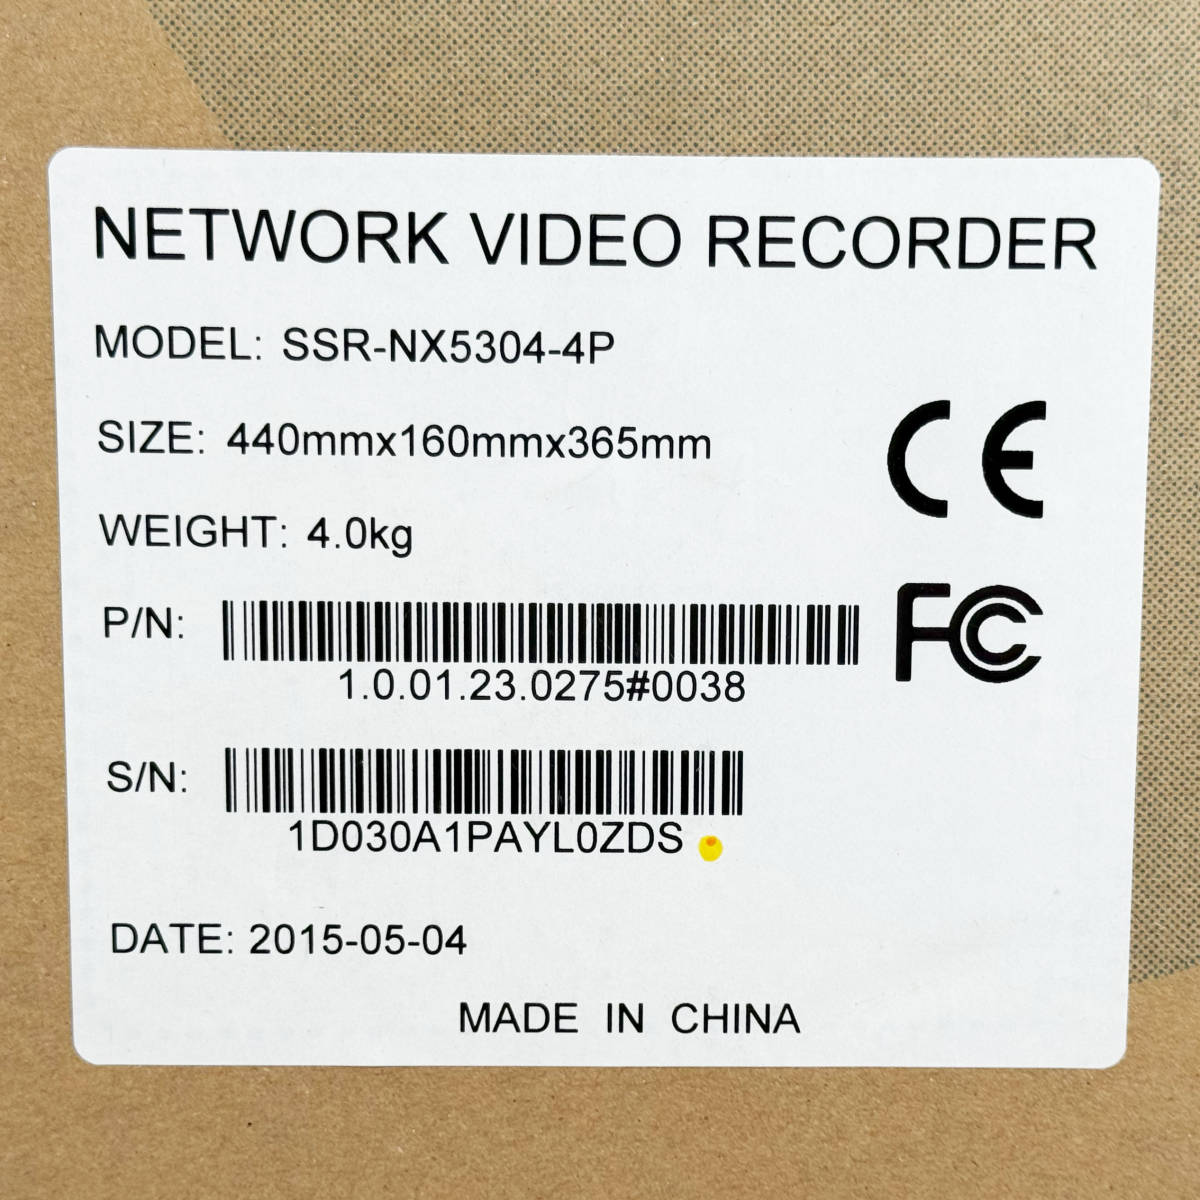 未使用品☆監視カメラ・ビデオレコーダーセット サンセキュリティシステム ドーム型カメラ2台 SSC-DPF6203VMR30 レコーダー SSR-NX5304-4Pの画像5